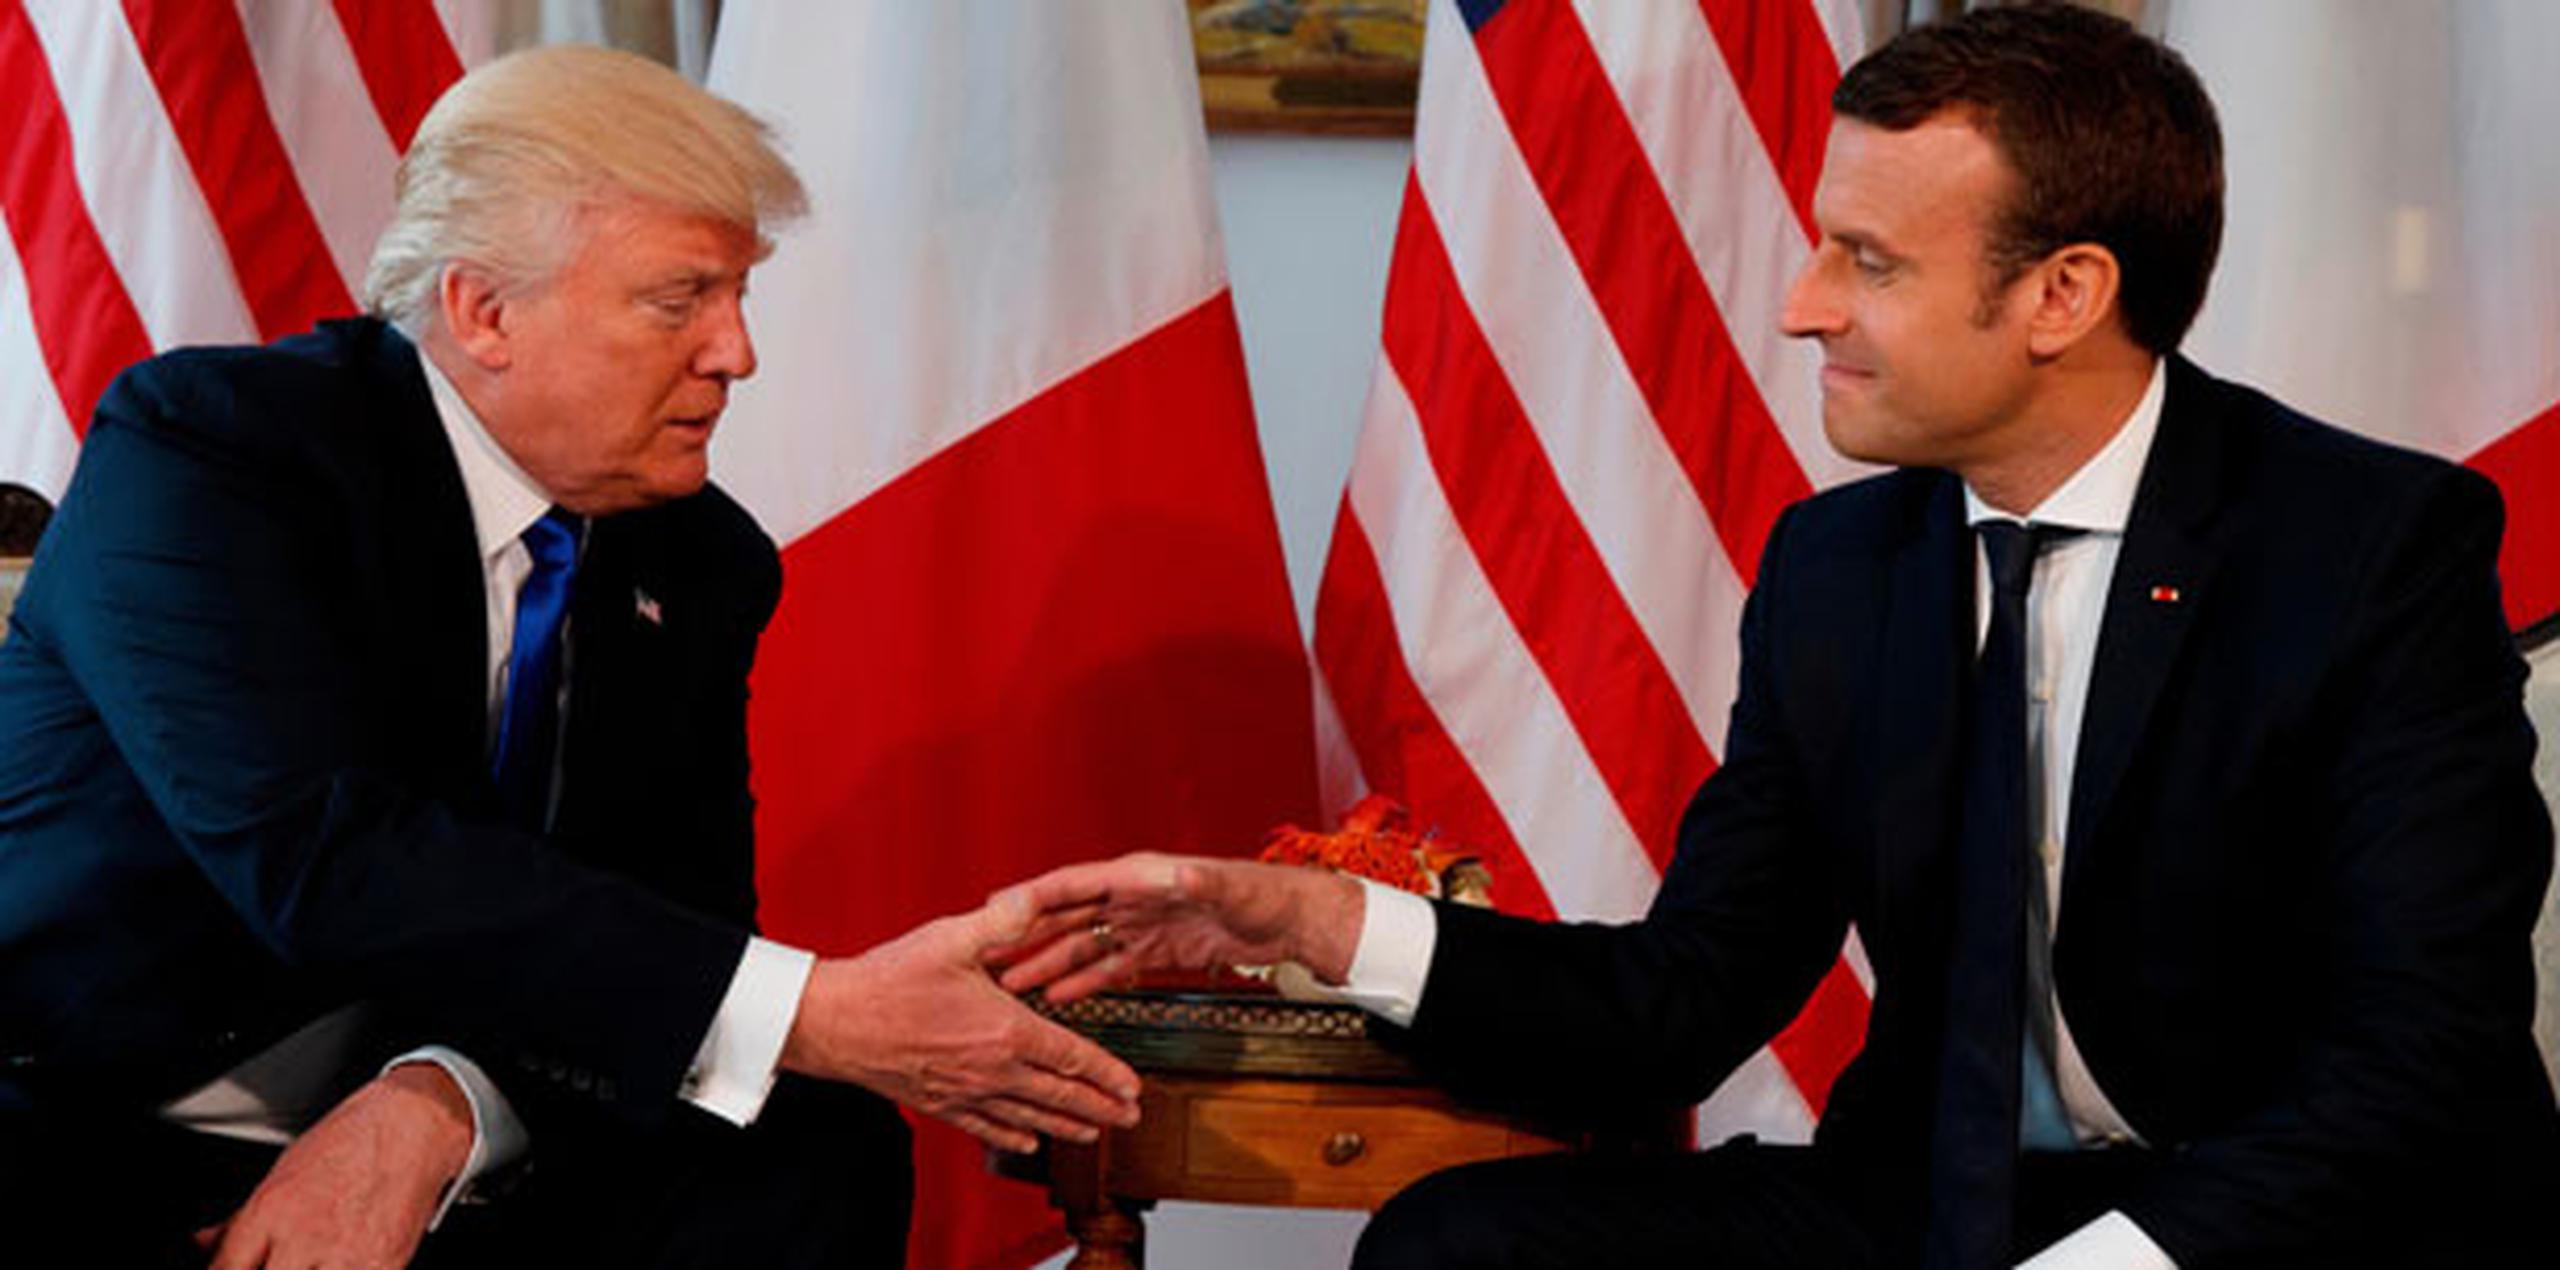 El líder europeo aseguró que él y Trump tienen una relación "muy especial" basándose en las veces que se han visto en persona (AP)